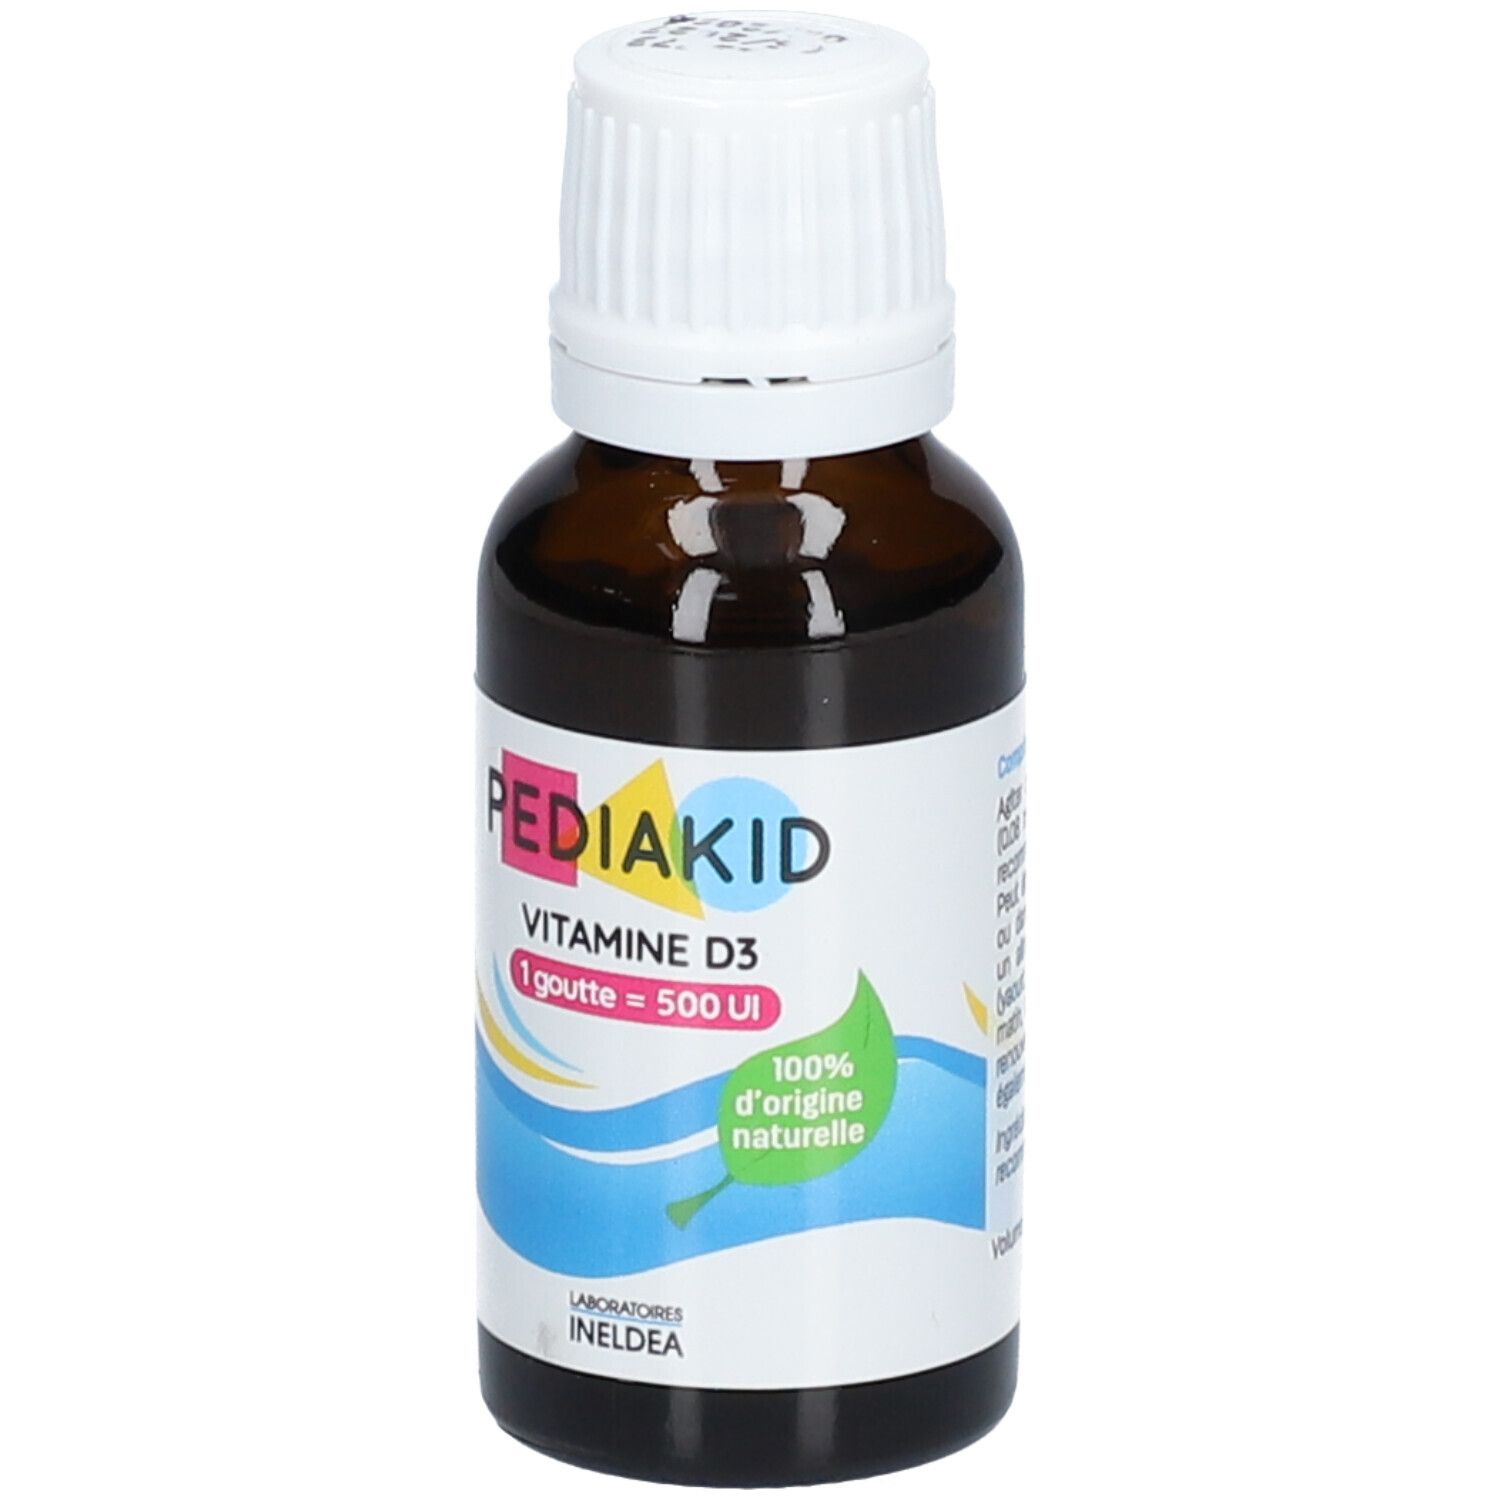 PEDIAKID® Vitamine D3